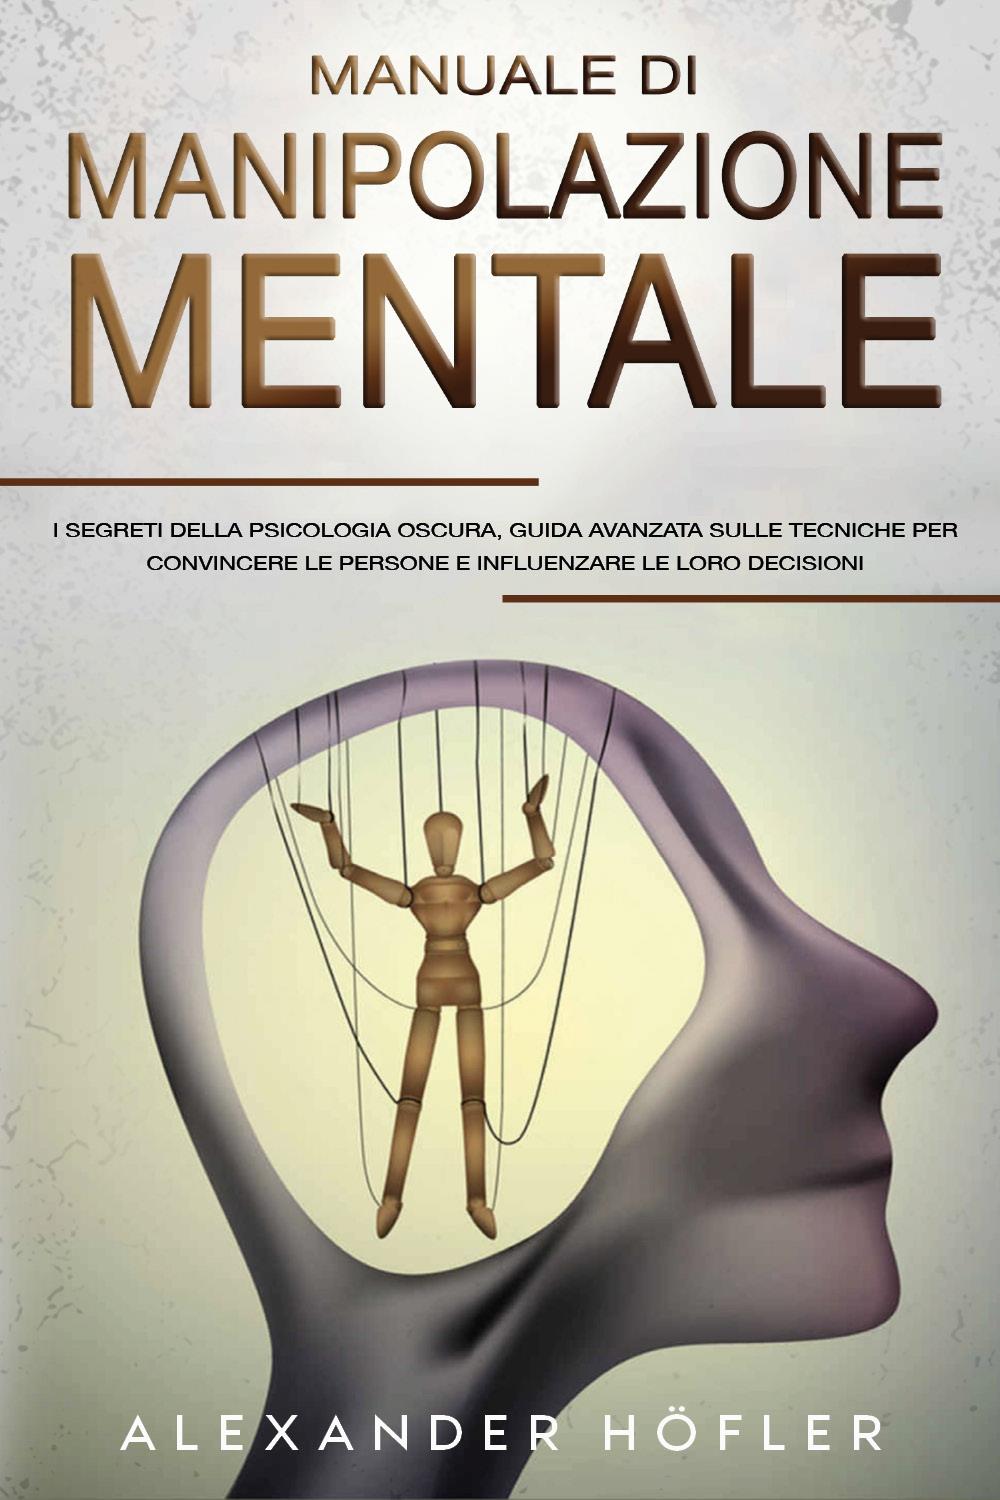 Manuale Di Manipolazione Mentale: I Segreti Della Psicologia Oscura, Guida Avanzata Sulle Tecniche Per Convincere Le Persone E Influenzare Le Loro Decisioni